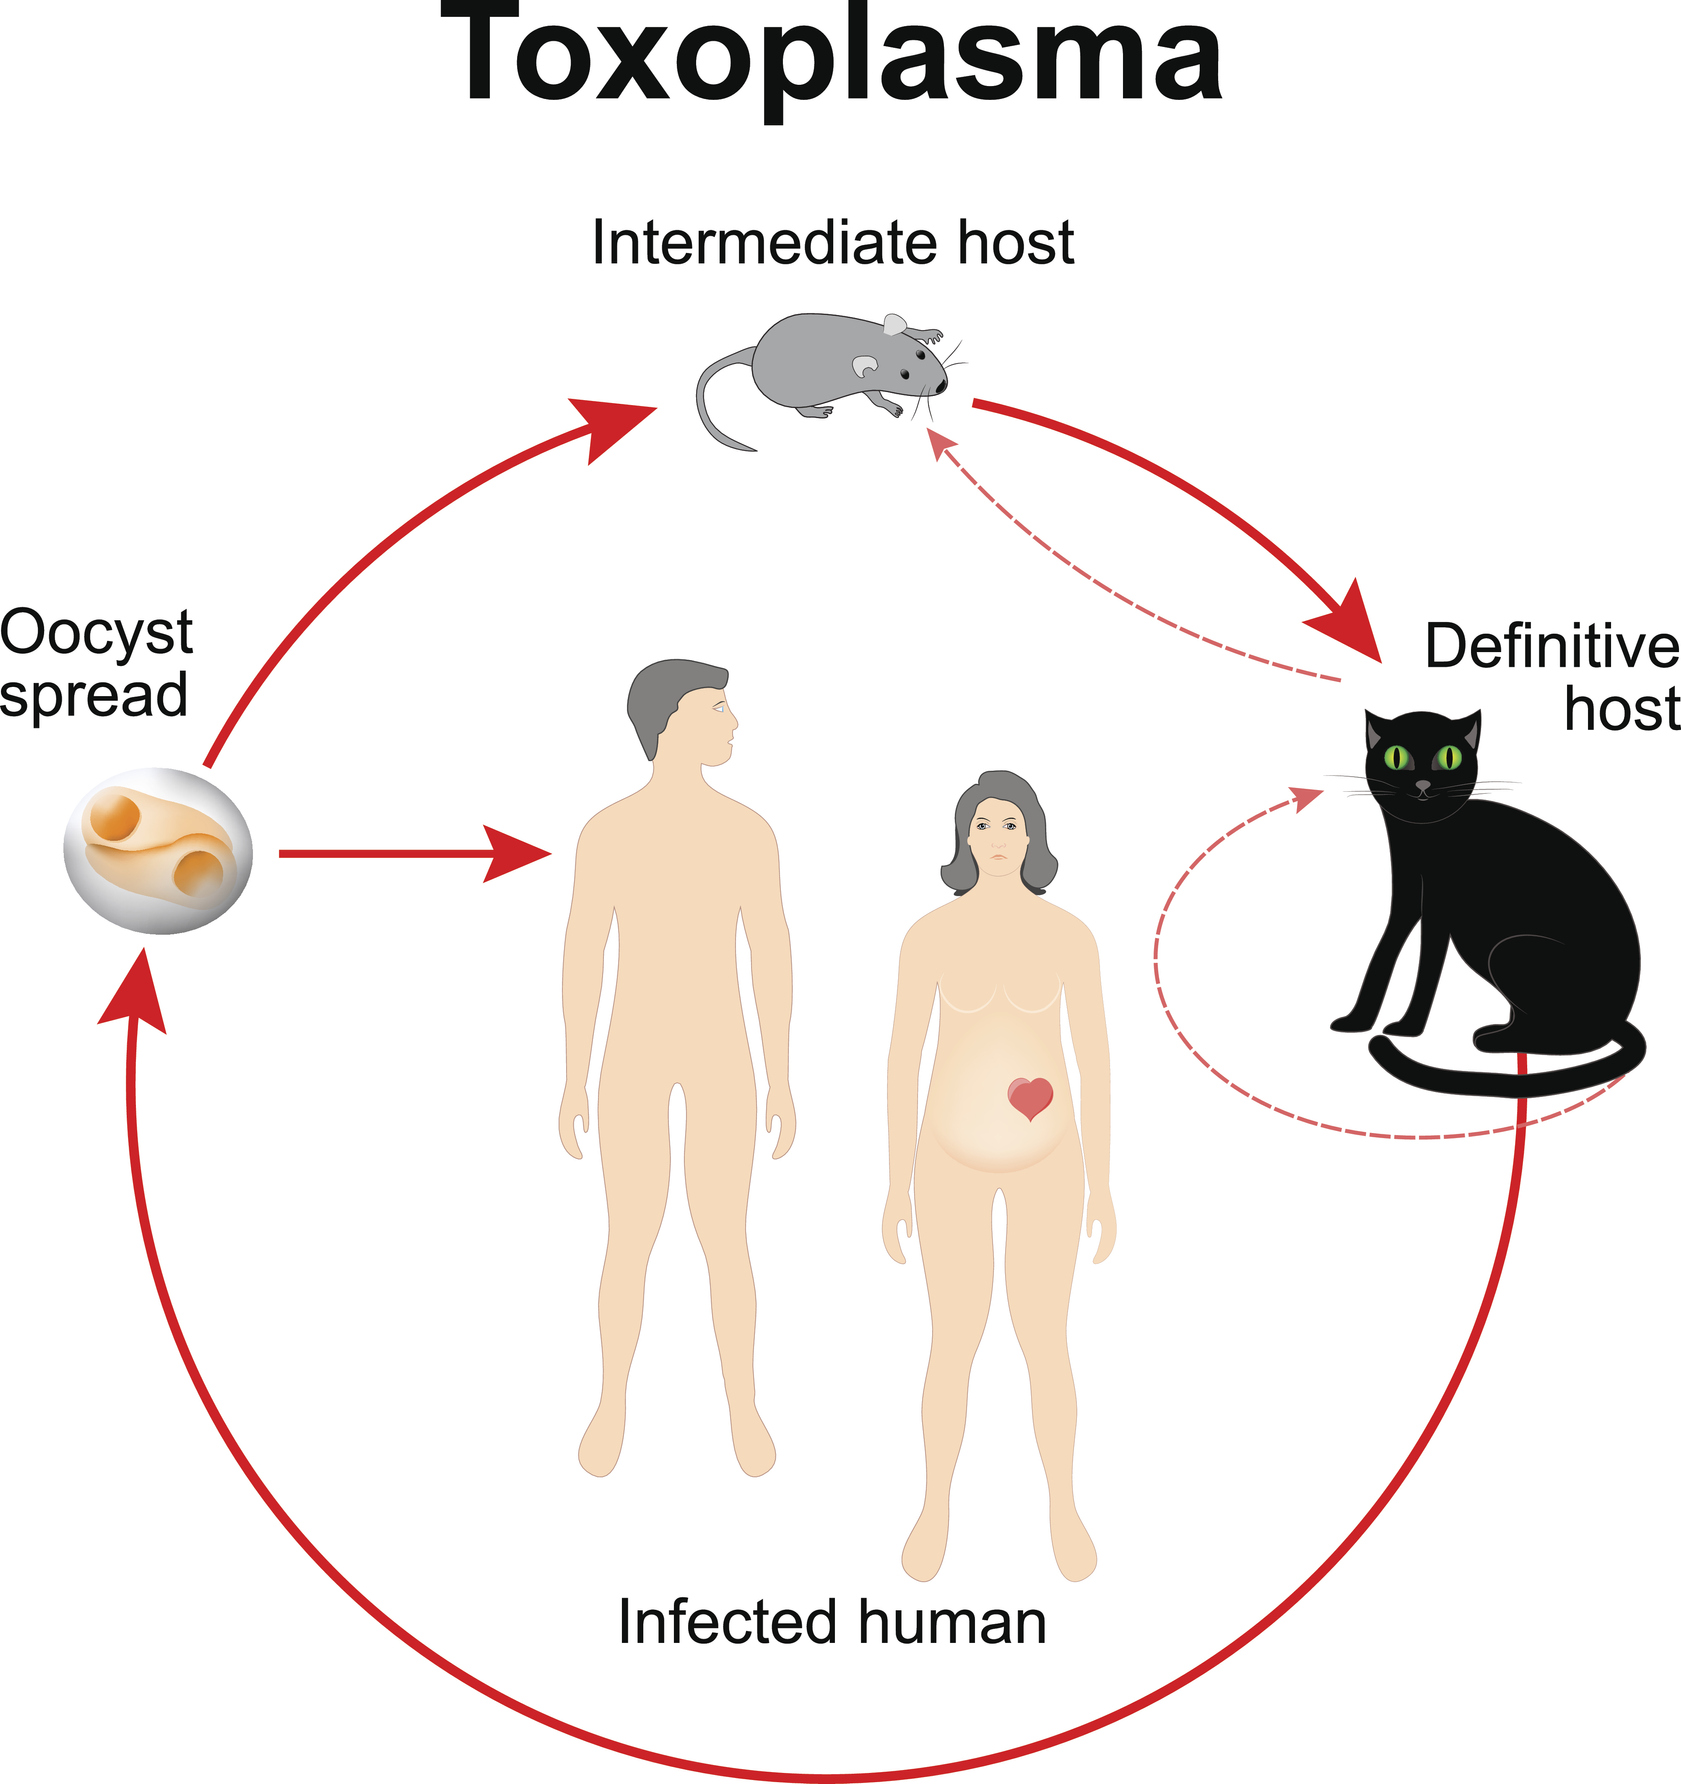 Life cycle of Toxoplasma gondii